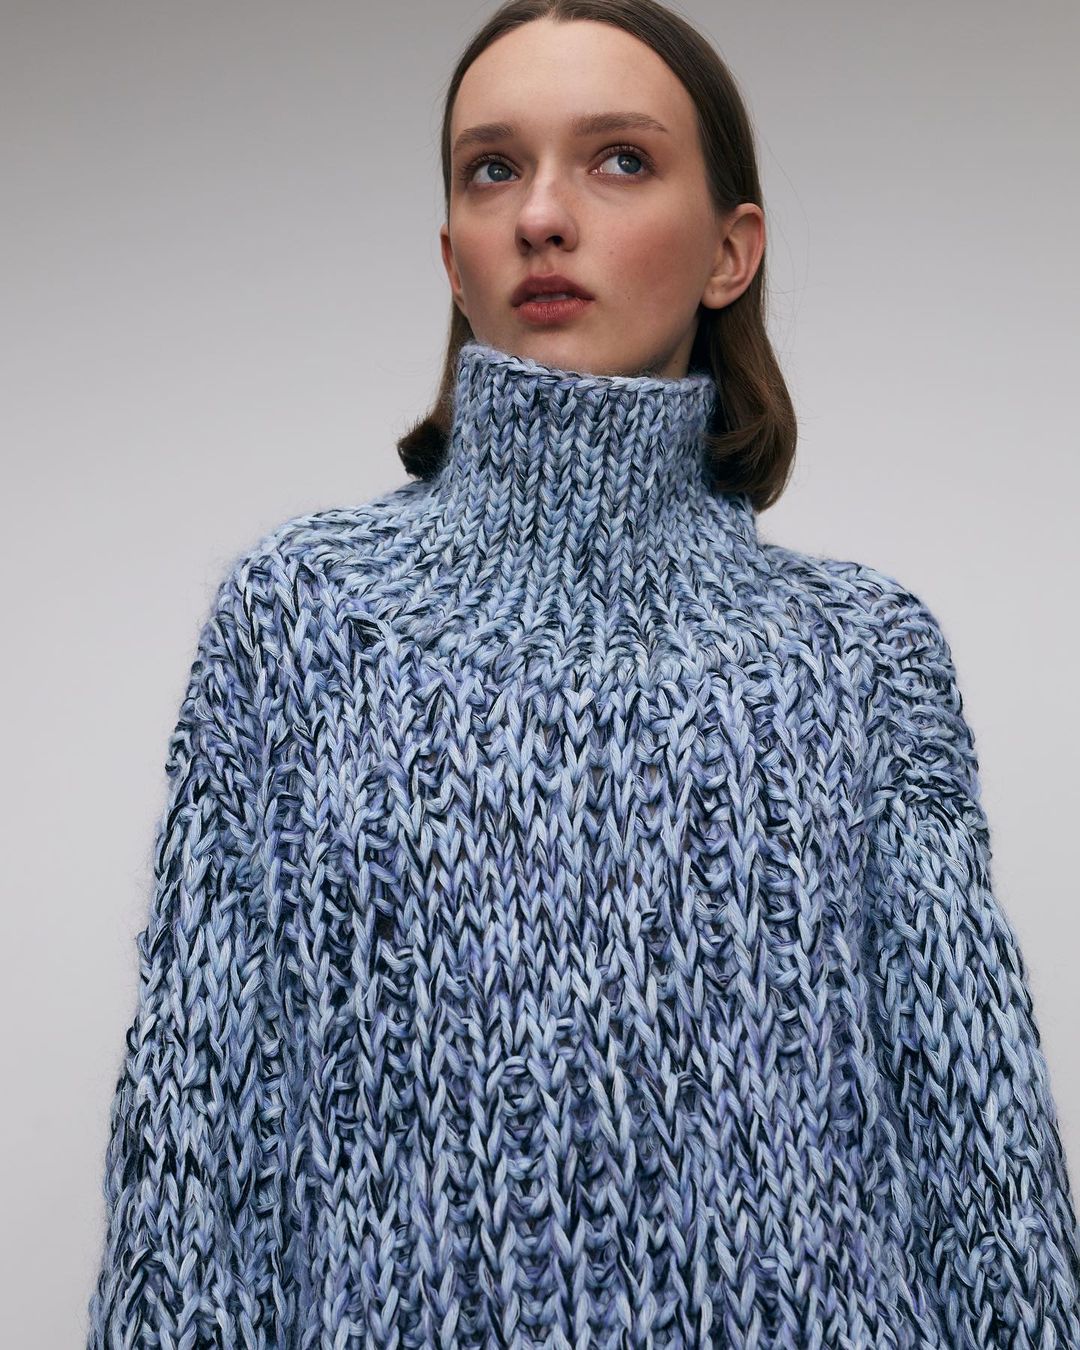 модный свитер осень зима 2021 2022 косы объем украинский бренд синий меланж голубой белый